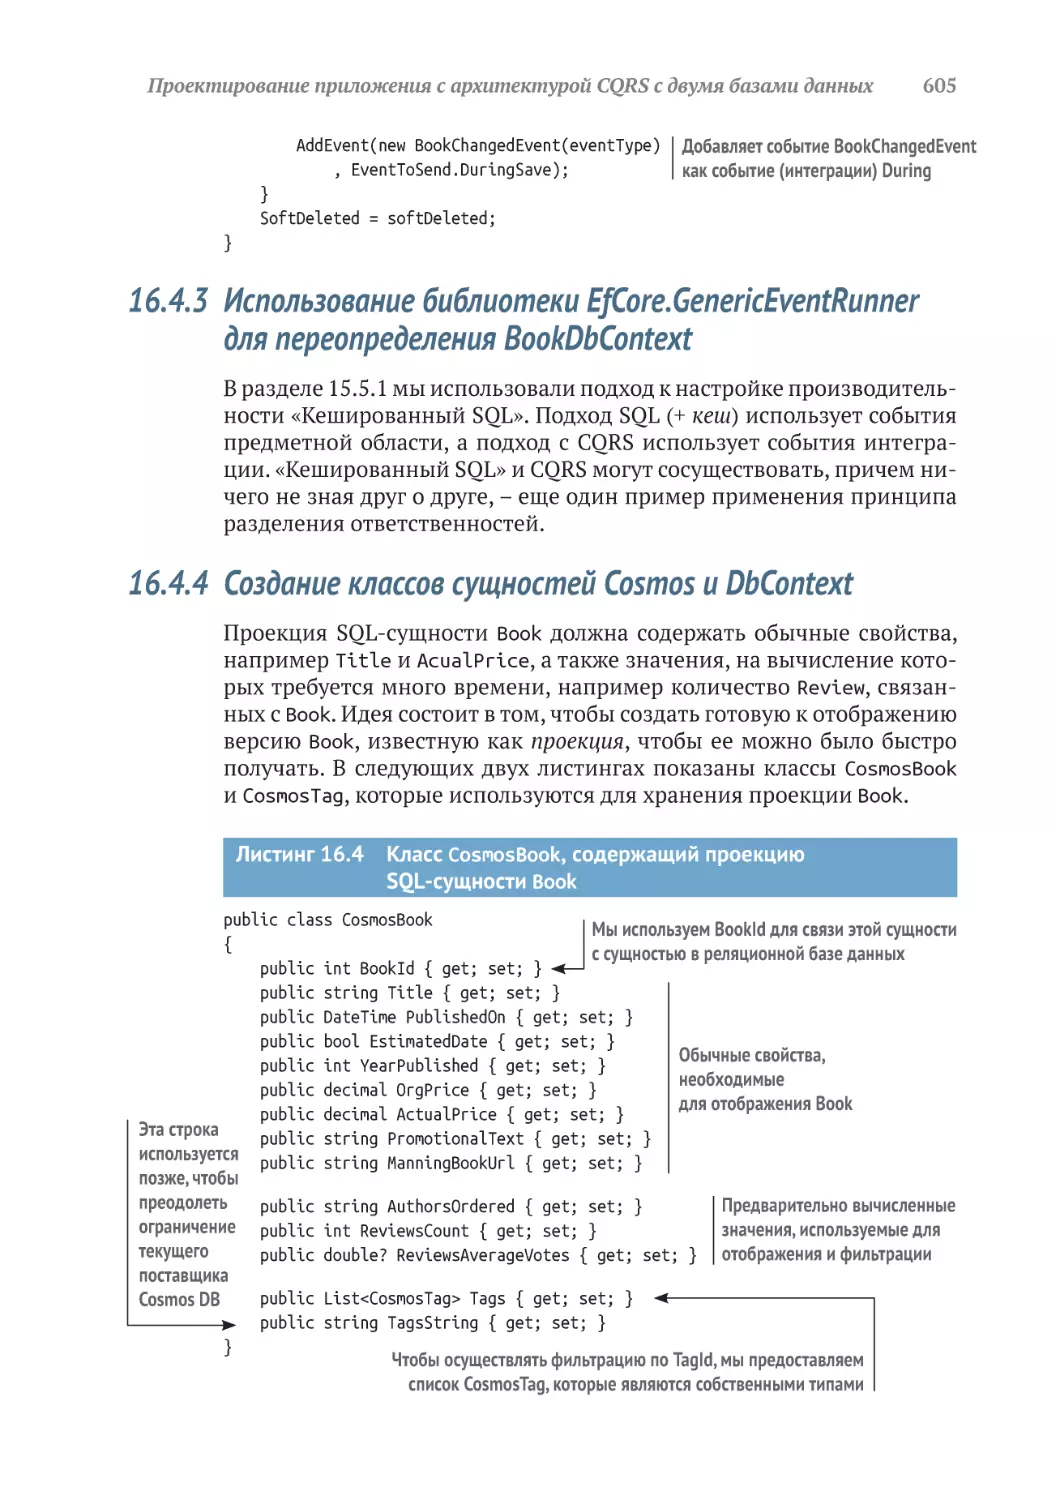 16.4.3	Использование библиотеки EfCore.GenericEventRunner для переопределения BookDbContext
16.4.4	Создание классов сущностей Cosmos и DbContext